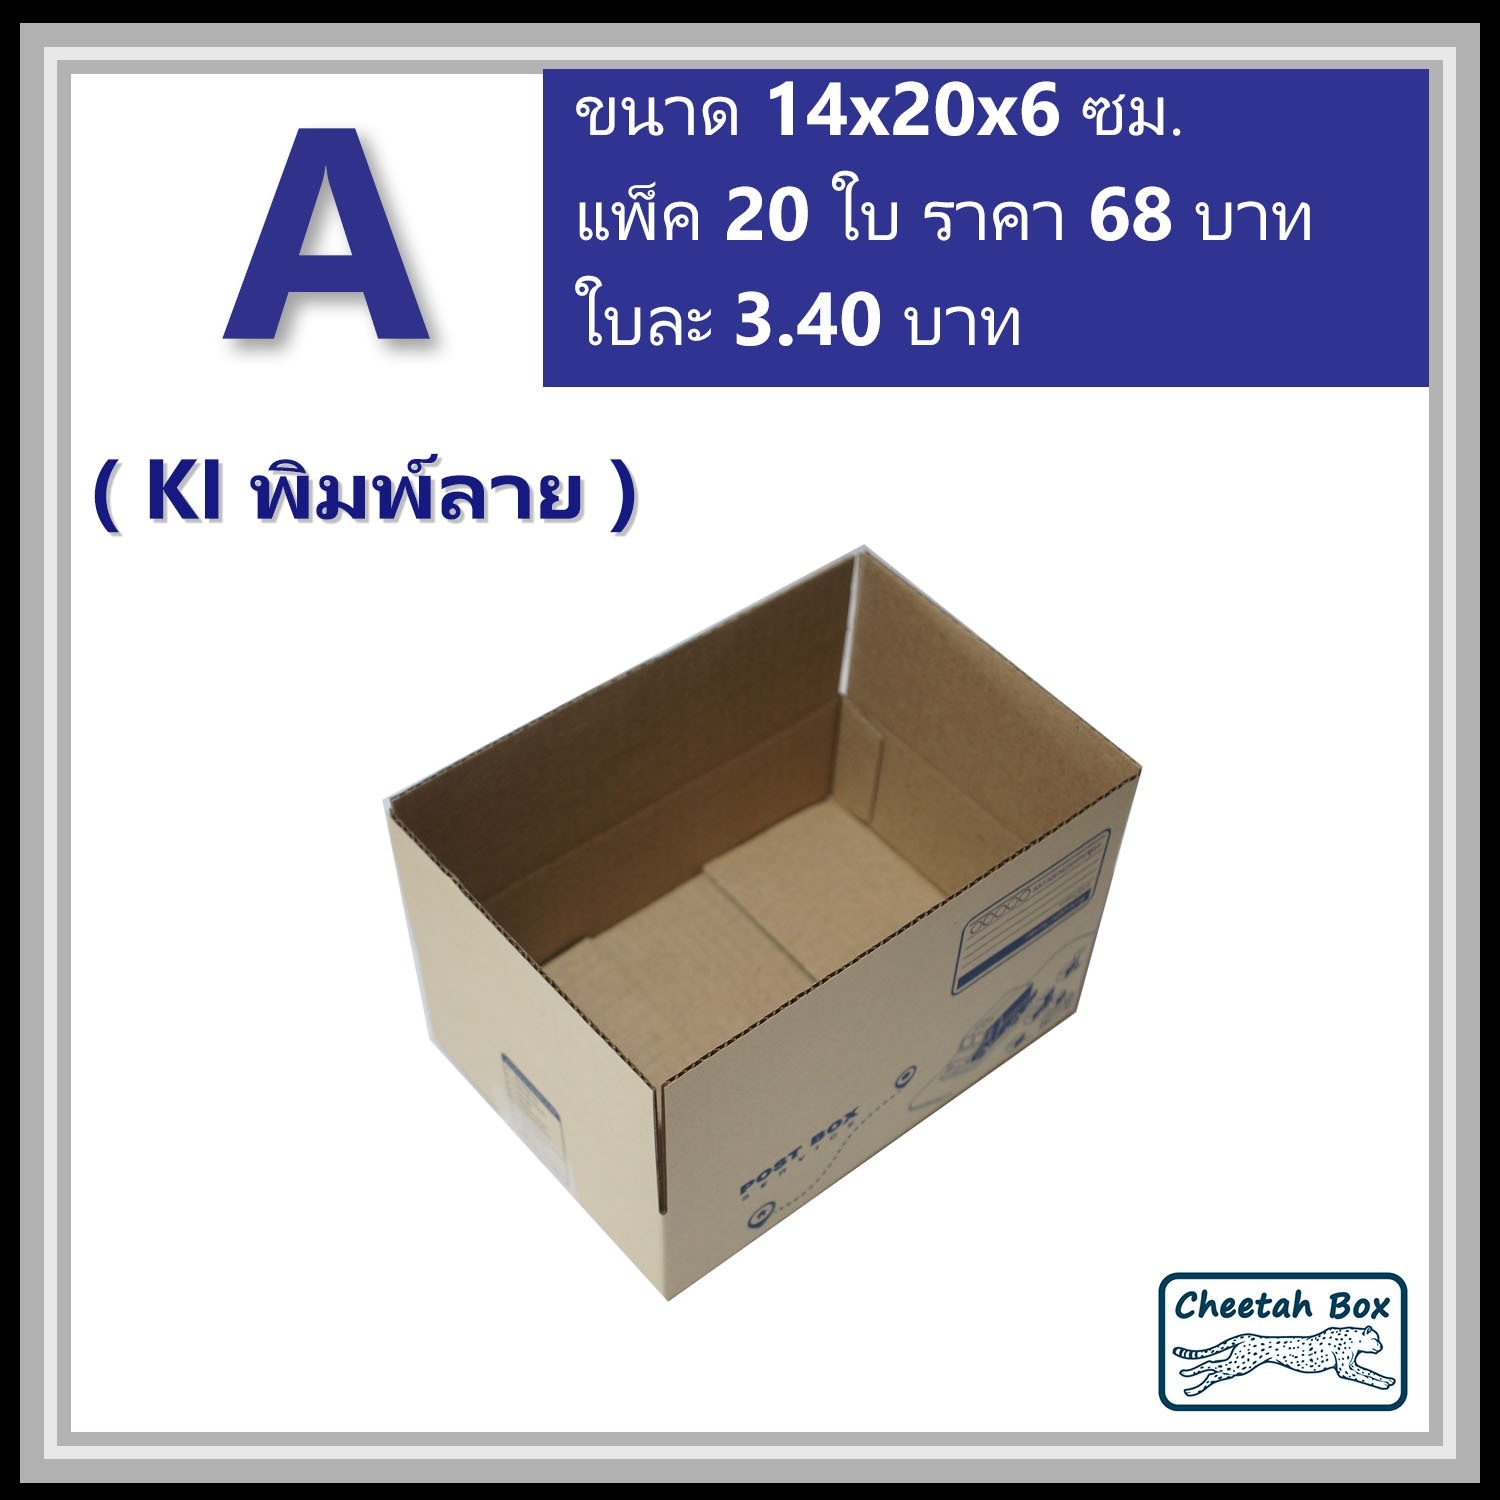 กล่องไปรษณีย์ A (Mini) พิมพ์ 1 สี (Cheetah Box) ขนาด 14*20*6 cm.